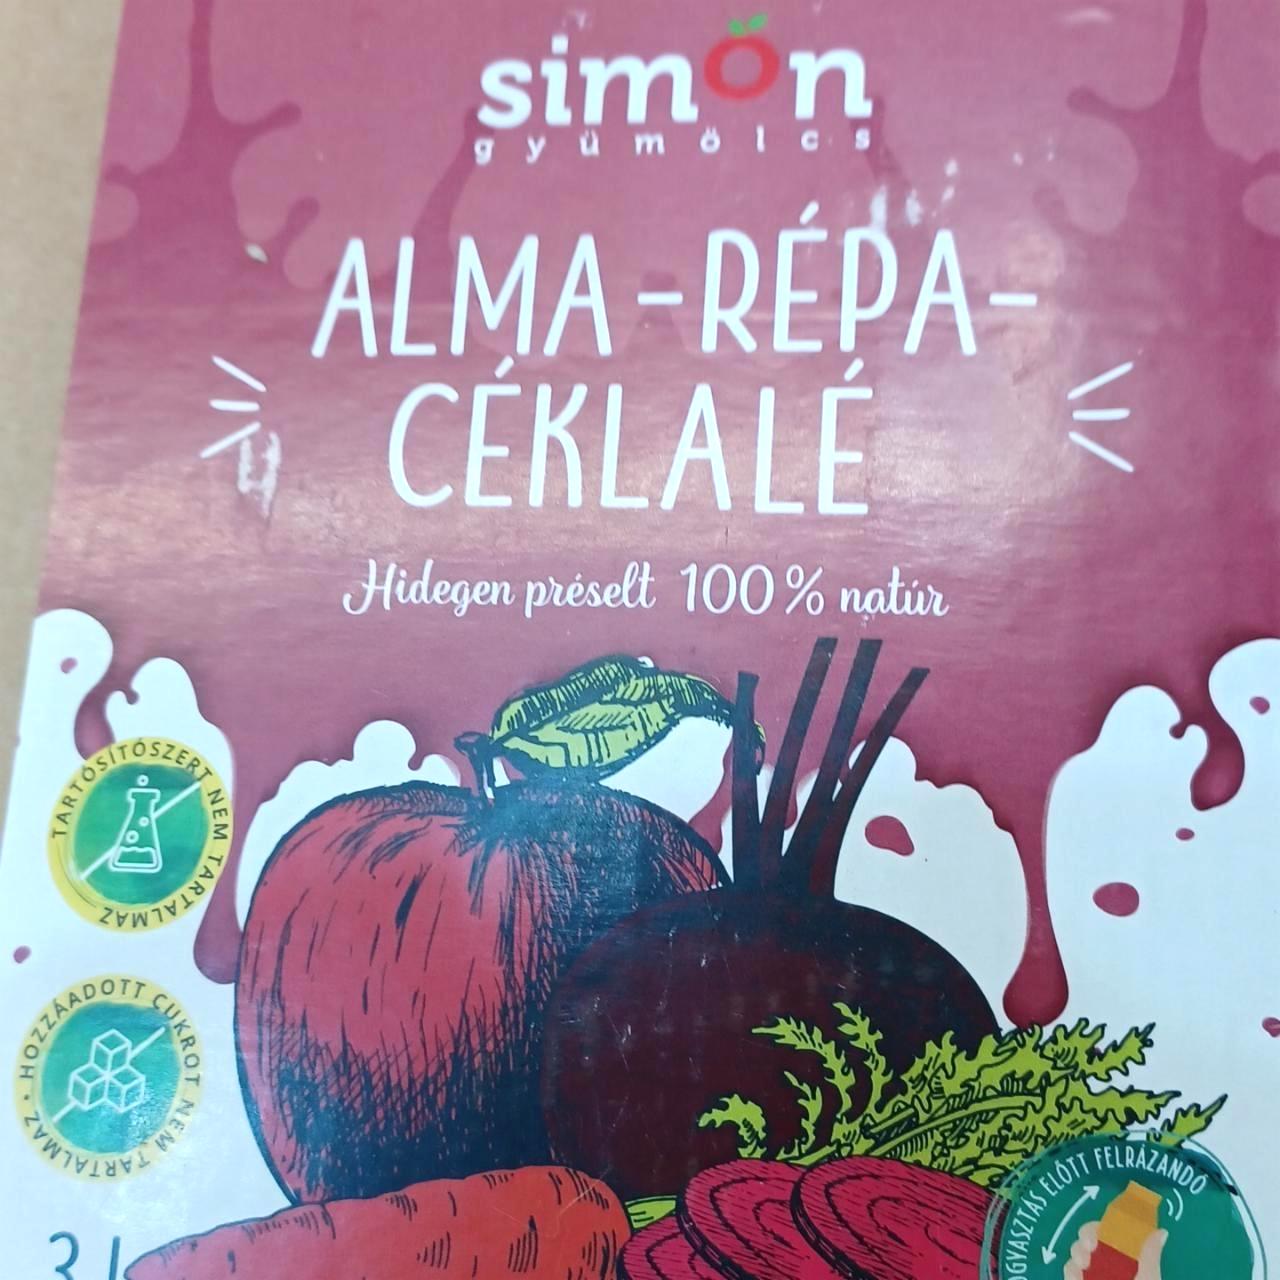 Képek - Alma-répa-céklalé Simon gyümölcs